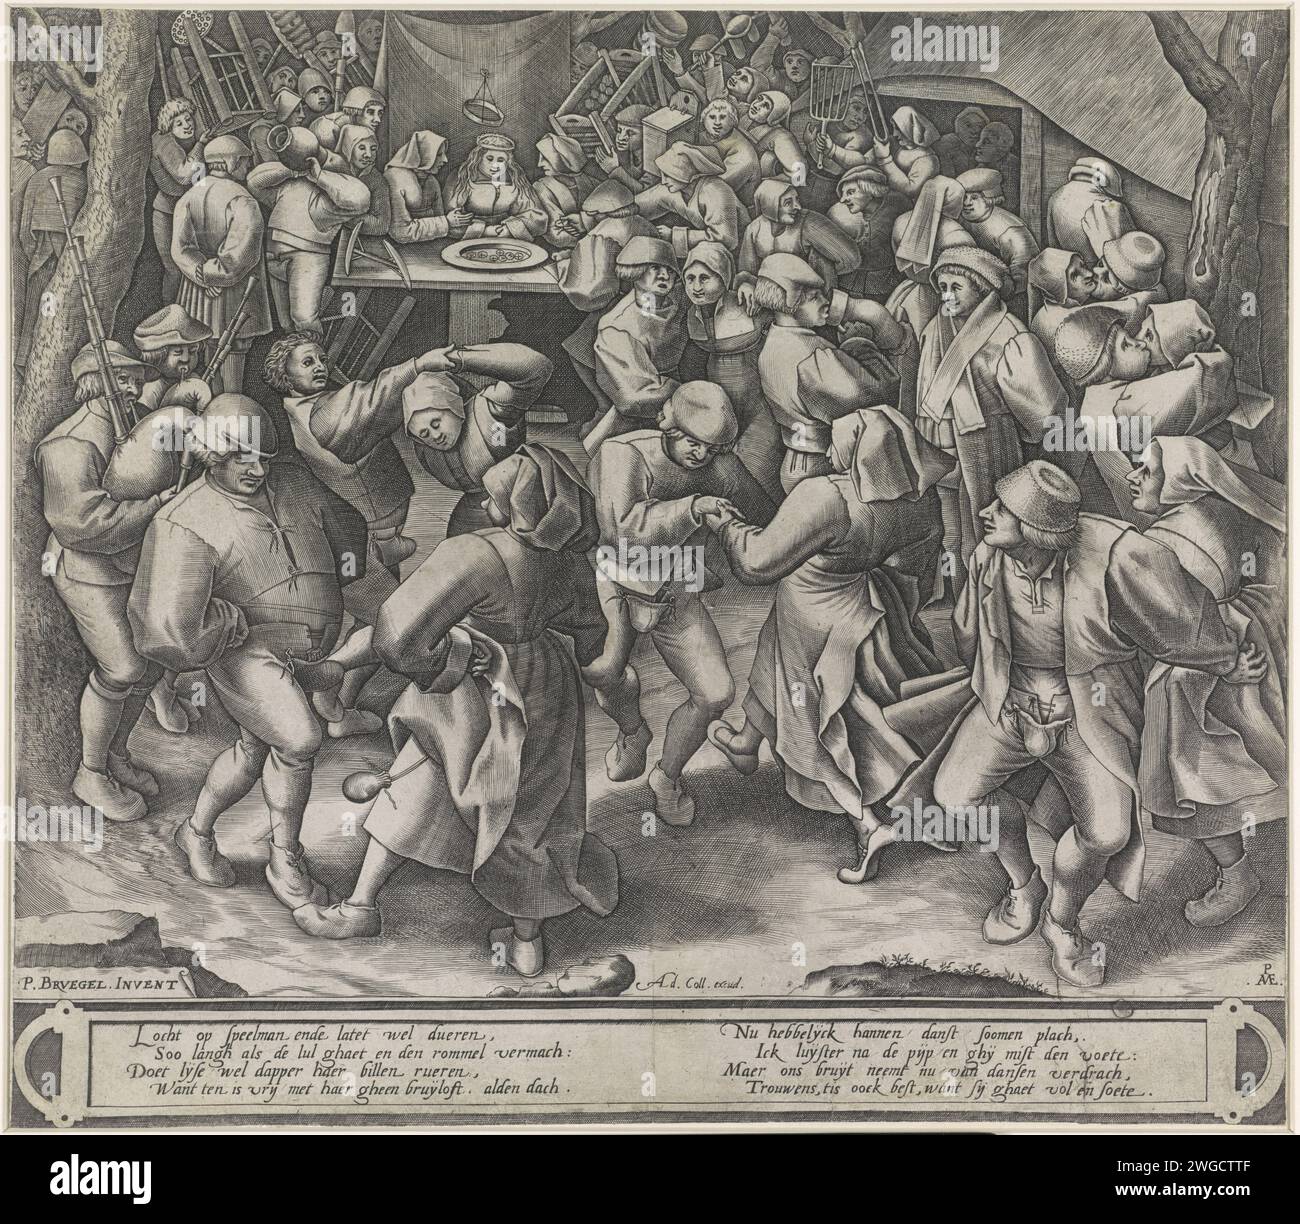 Tanz auf Boeren's Hochzeit, Pieter van der Heyden, nach Pieter Bruegel (I), 1580 - 1618 Druck verschiedene Tanzpaare auf eine Bauernhochzeit. Im Hintergrund sitzt die Braut hinter einer Schüssel mit Münzen. Gäste bringen Geschenke und Geld mit. Zwei vierzeilige Strophen in Niederländisch unter dem Auftritt auf der Cartouche. Antwerpener Papierstich tanzen beim Hochzeitsfest. Landwirte. Geschenke bringen; Geschenke austauschen. Steppsteg (Abdeckung für die Genitalien) Stockfoto